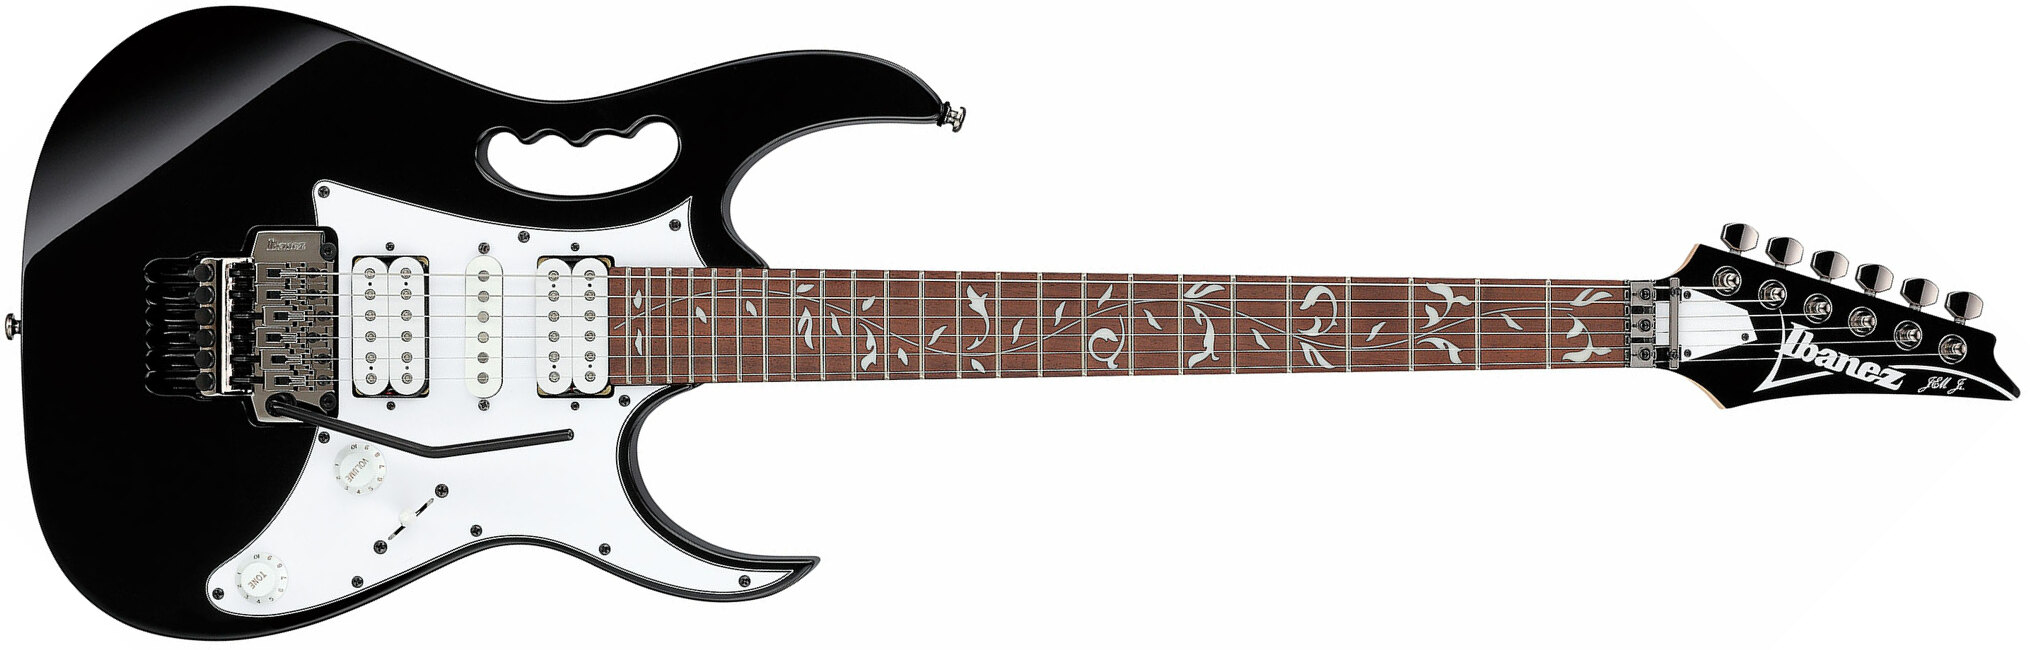 Ibanez Steve Vai Jemjr Bk Signature Hsh Fr Jat - Black - Guitare Électrique Forme Str - Main picture